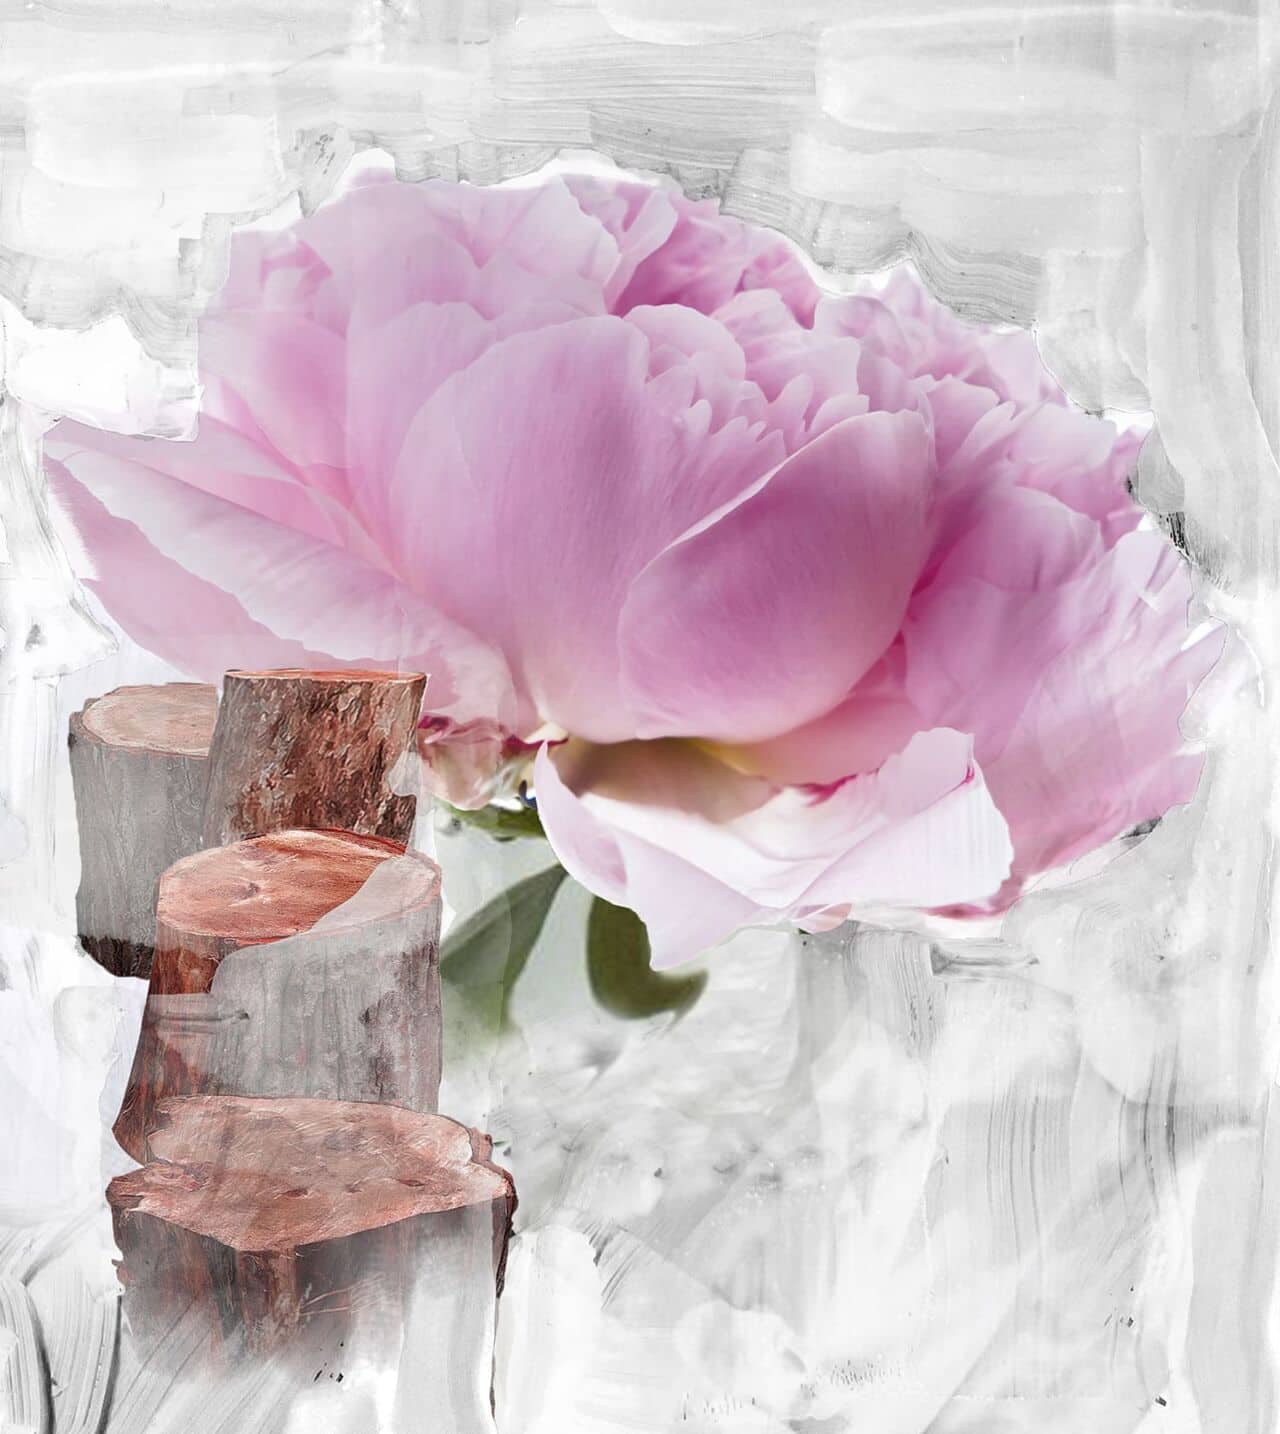 Ingredientes naturales como rosa Centifolia, peonía y sándalo, evocando el perfume Blanche de Byredo para novia